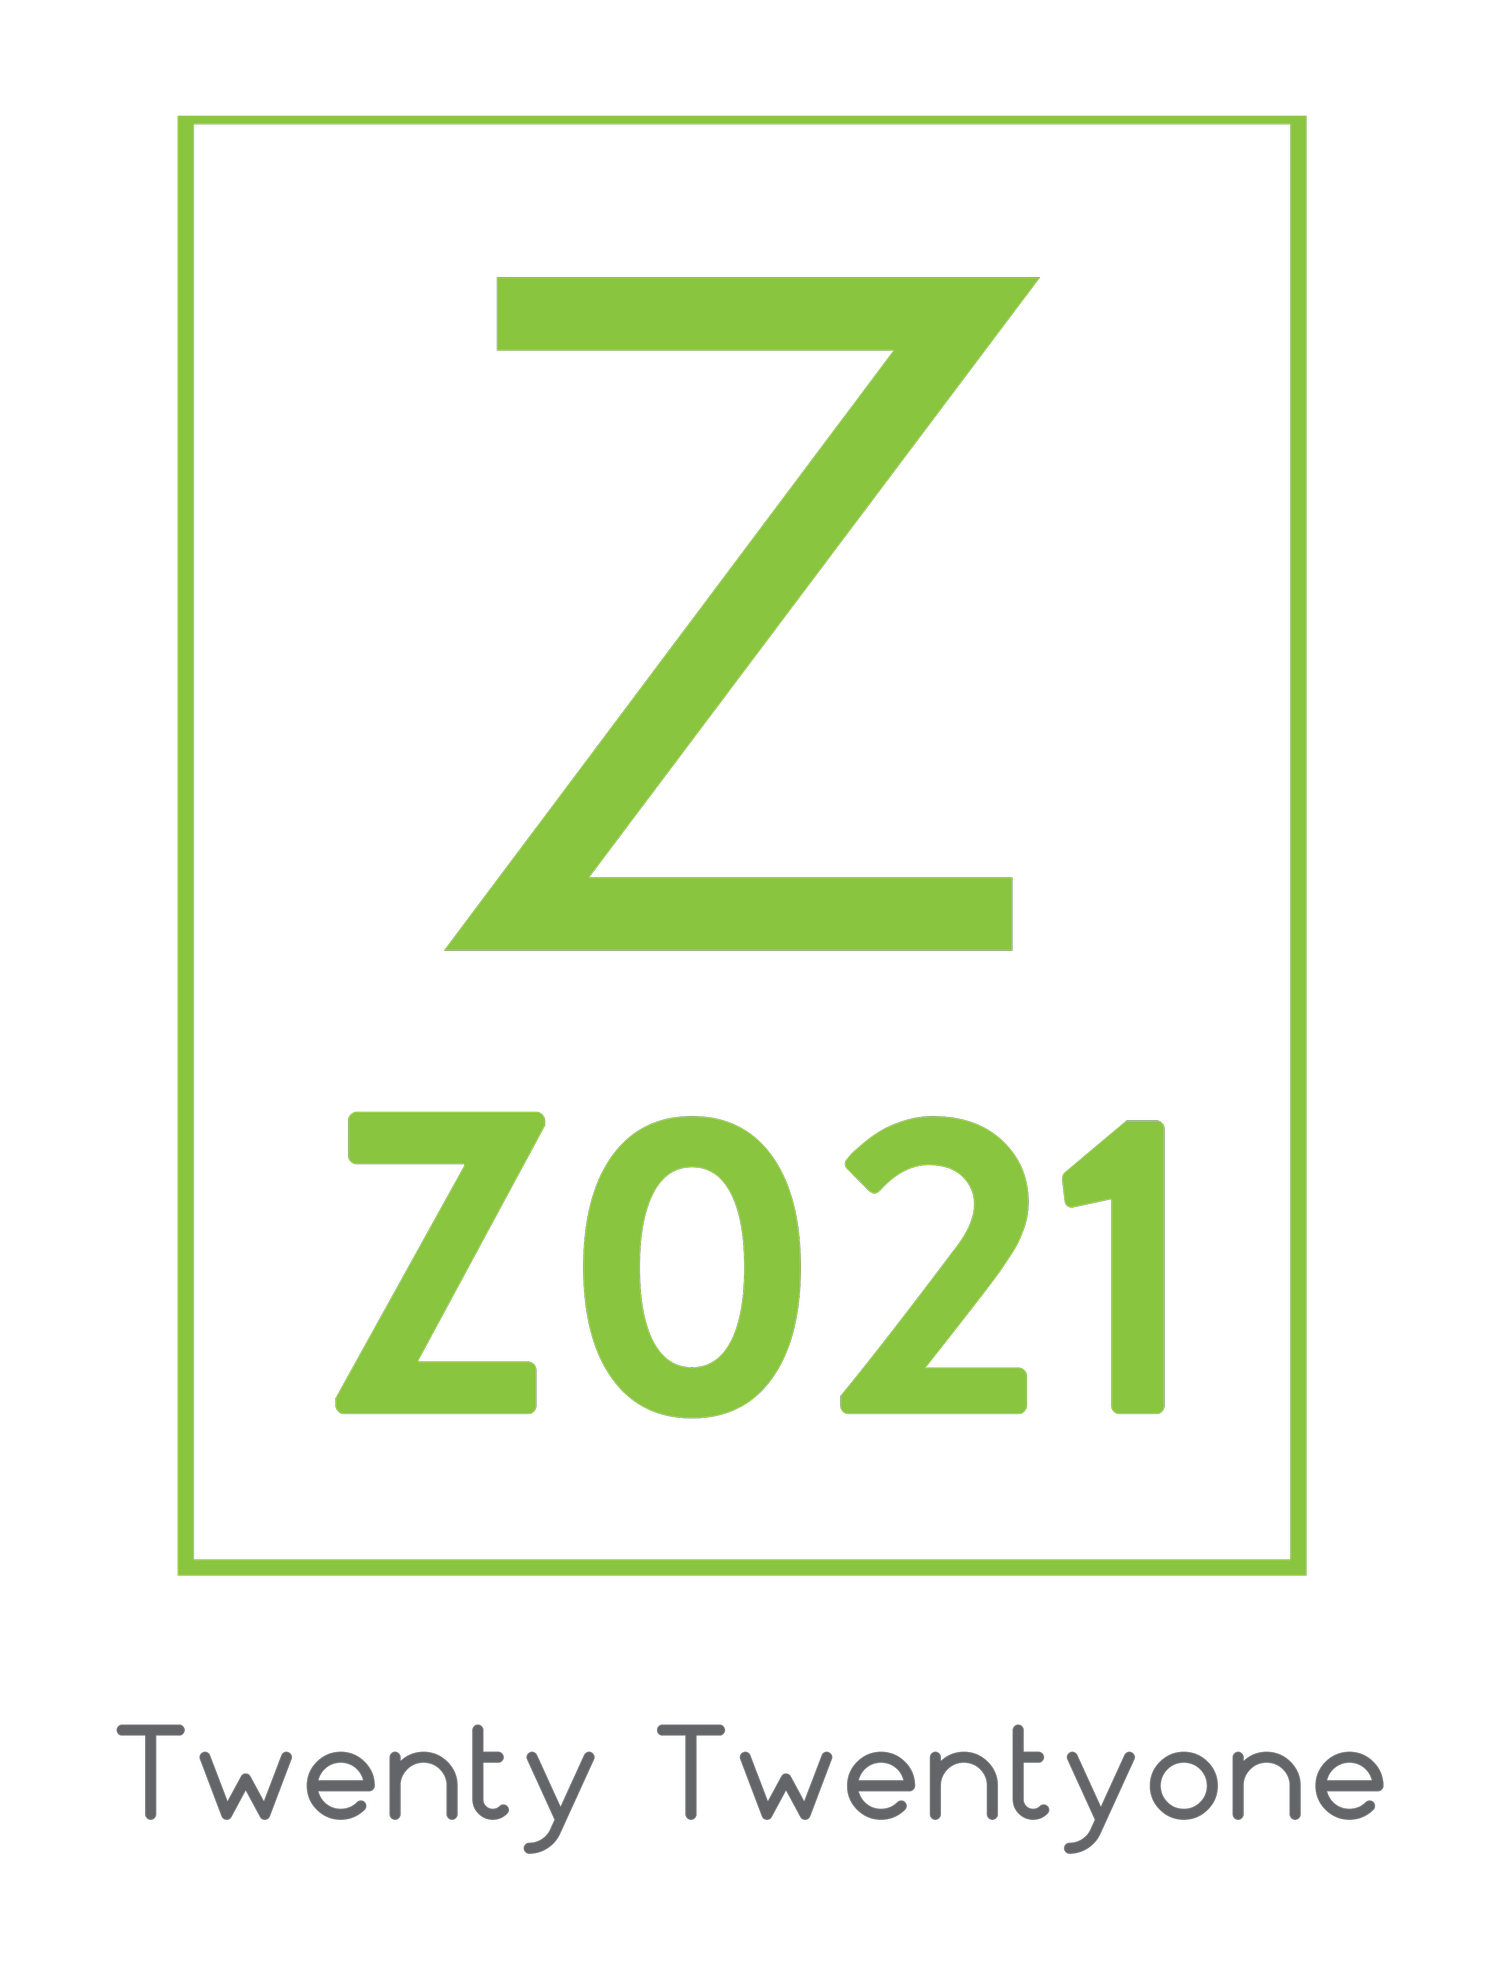 Z021 Digital Agency